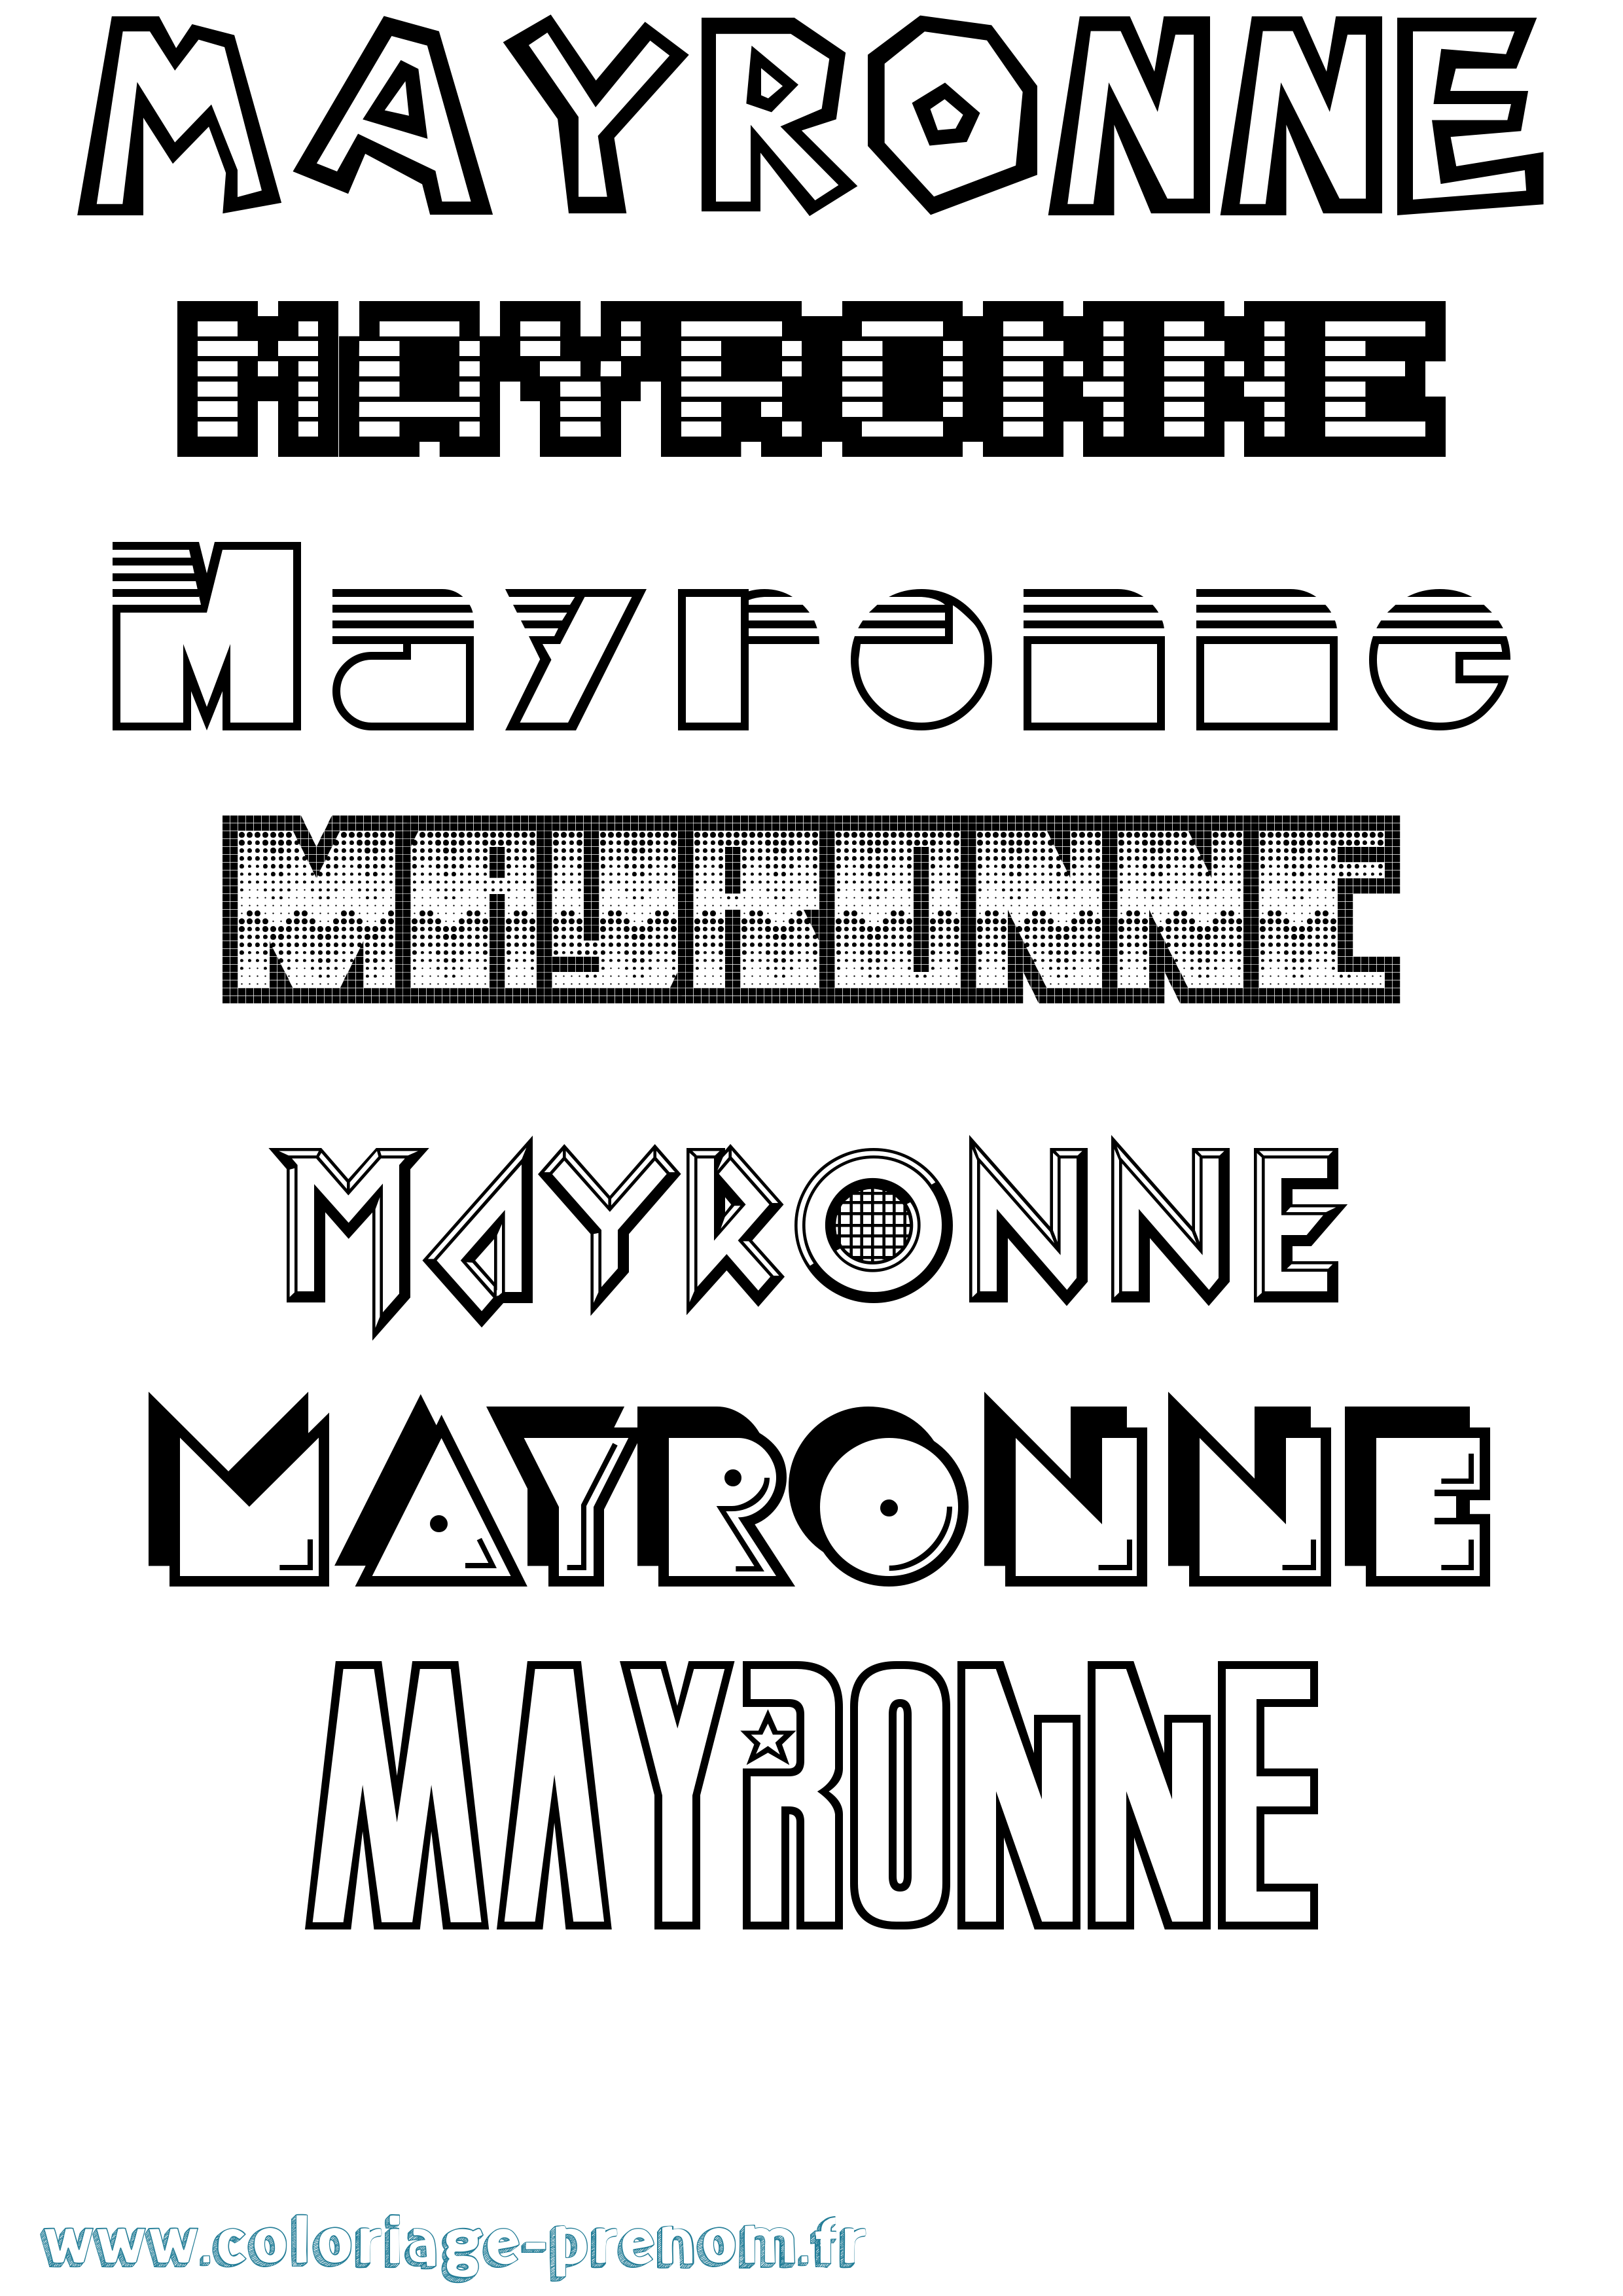 Coloriage prénom Mayronne Jeux Vidéos